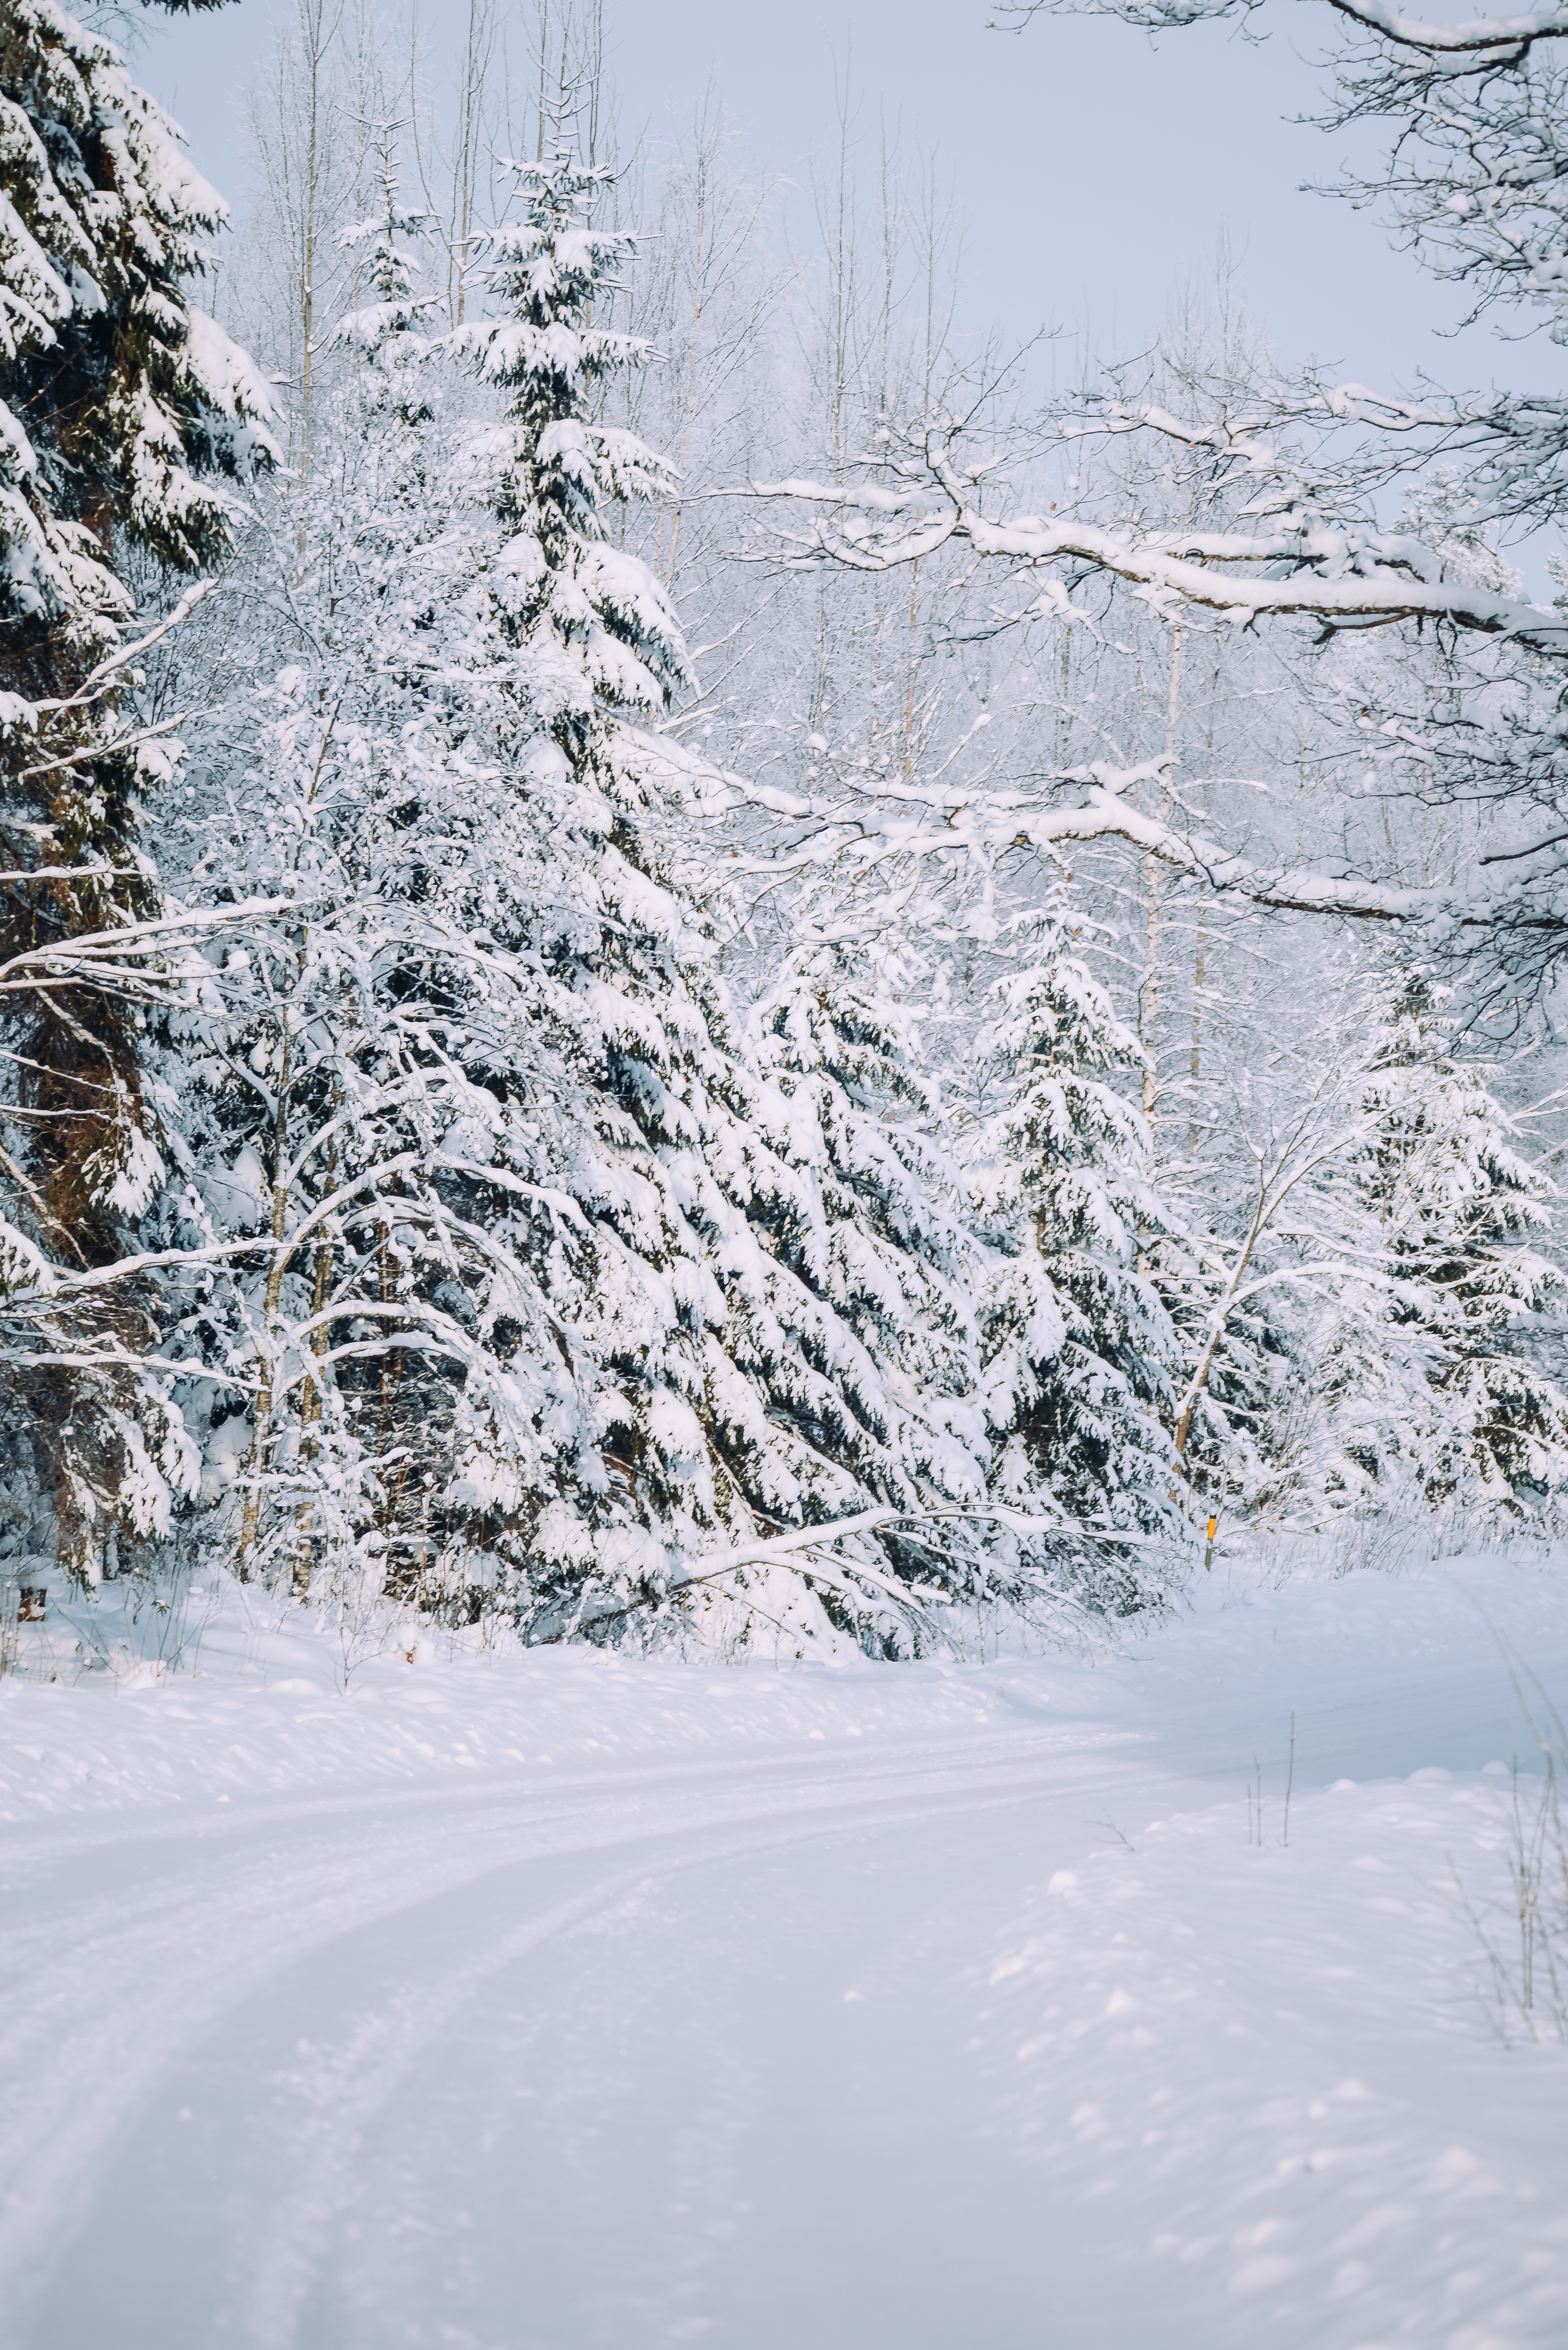 155081 免費下載壁紙 冬天, 性质, 雪, 路, 森林, 雪覆盖, 白雪覆盖 屏保和圖片